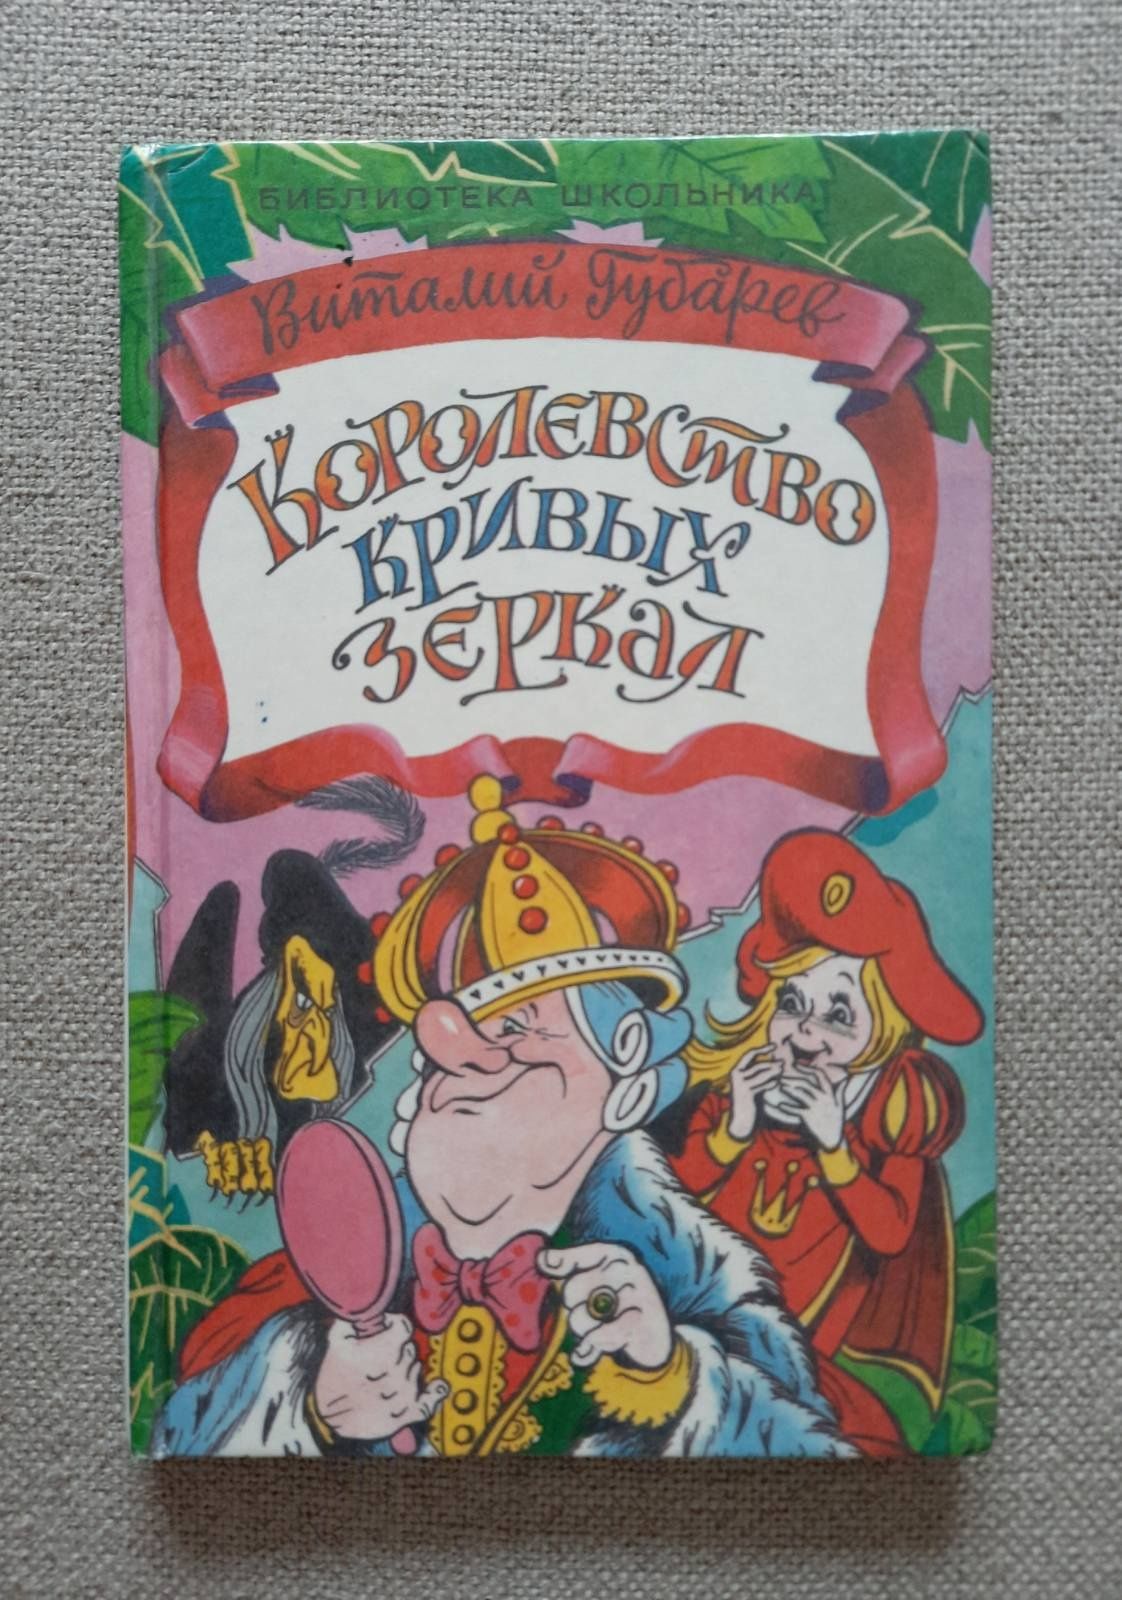 Детская книга Губарев В. "Королевство кривых зеркал"